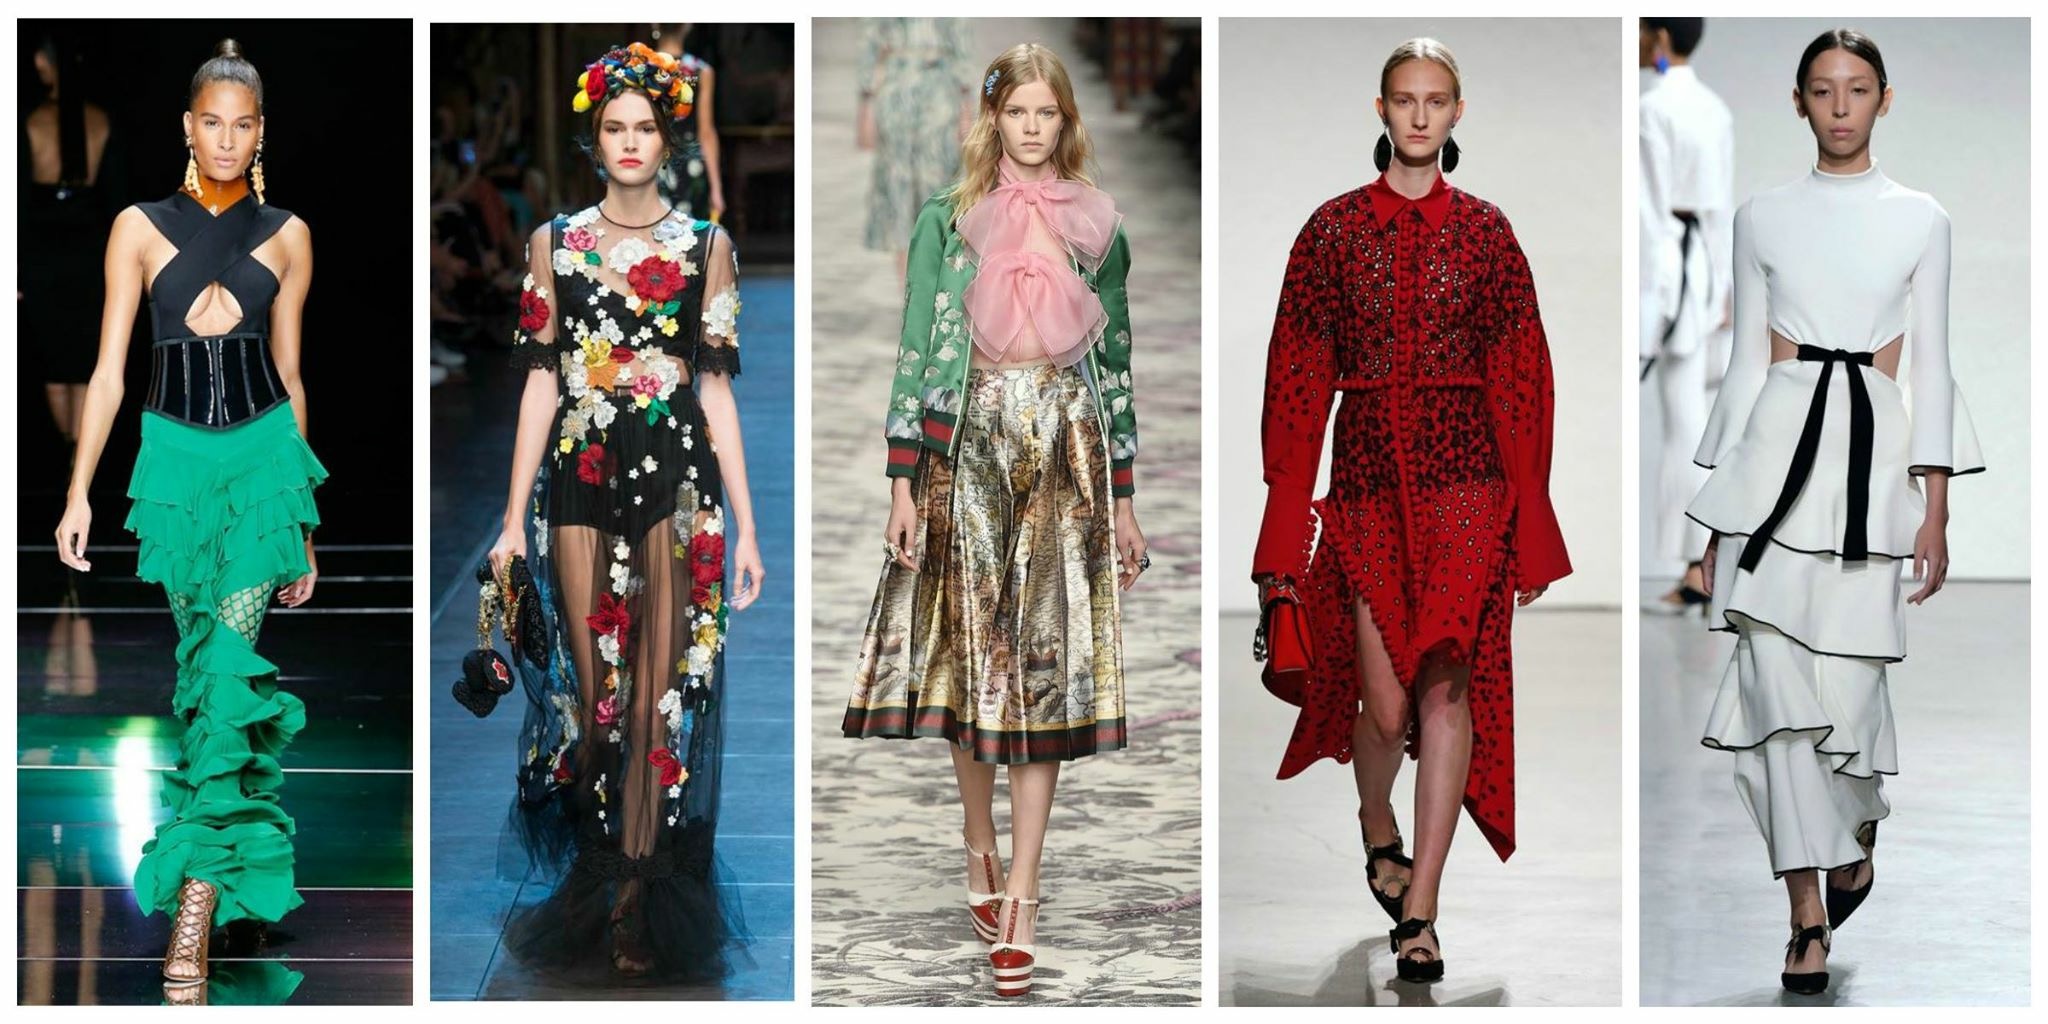   Από αριστερά:Proenza Schouler, Blugirl, Dolce&Gabbana, Oscar de la Renta, Jonathan Simkhai.